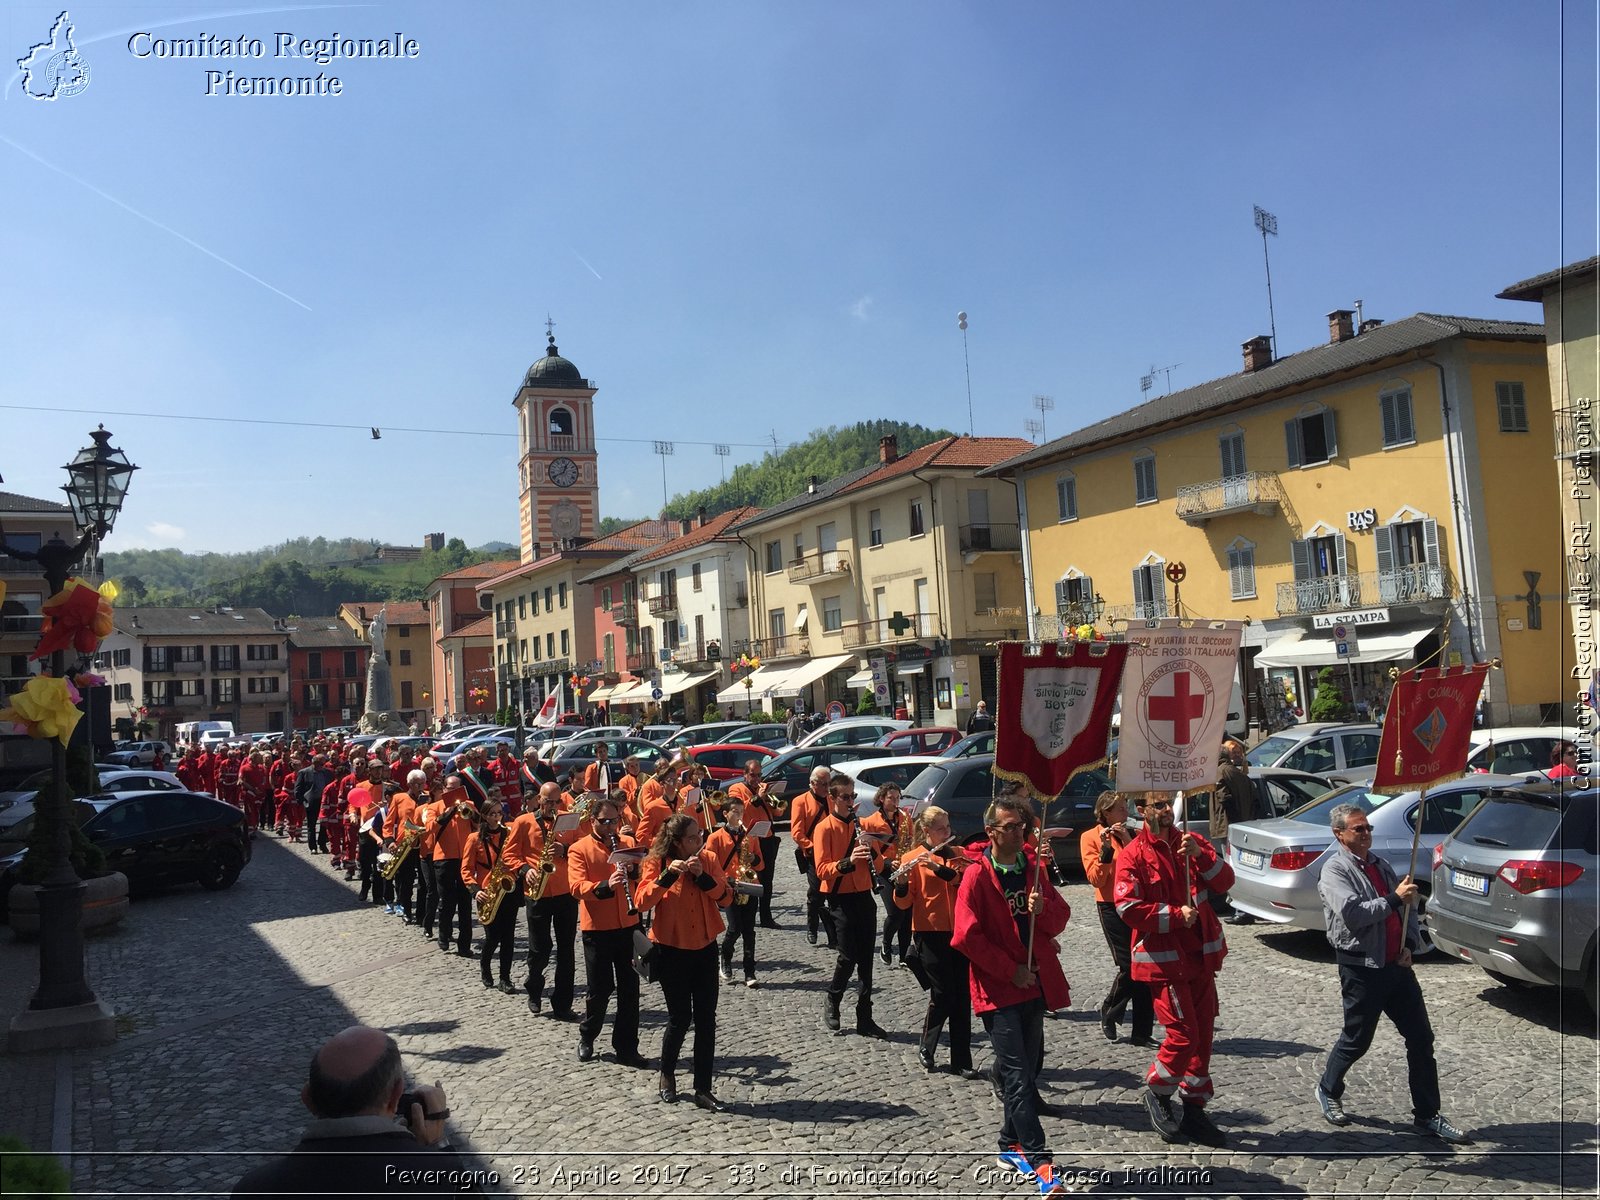 Peveragno 23 Aprile 2017 - 33 di Fondazione - Croce Rossa Italiana- Comitato Regionale del Piemonte